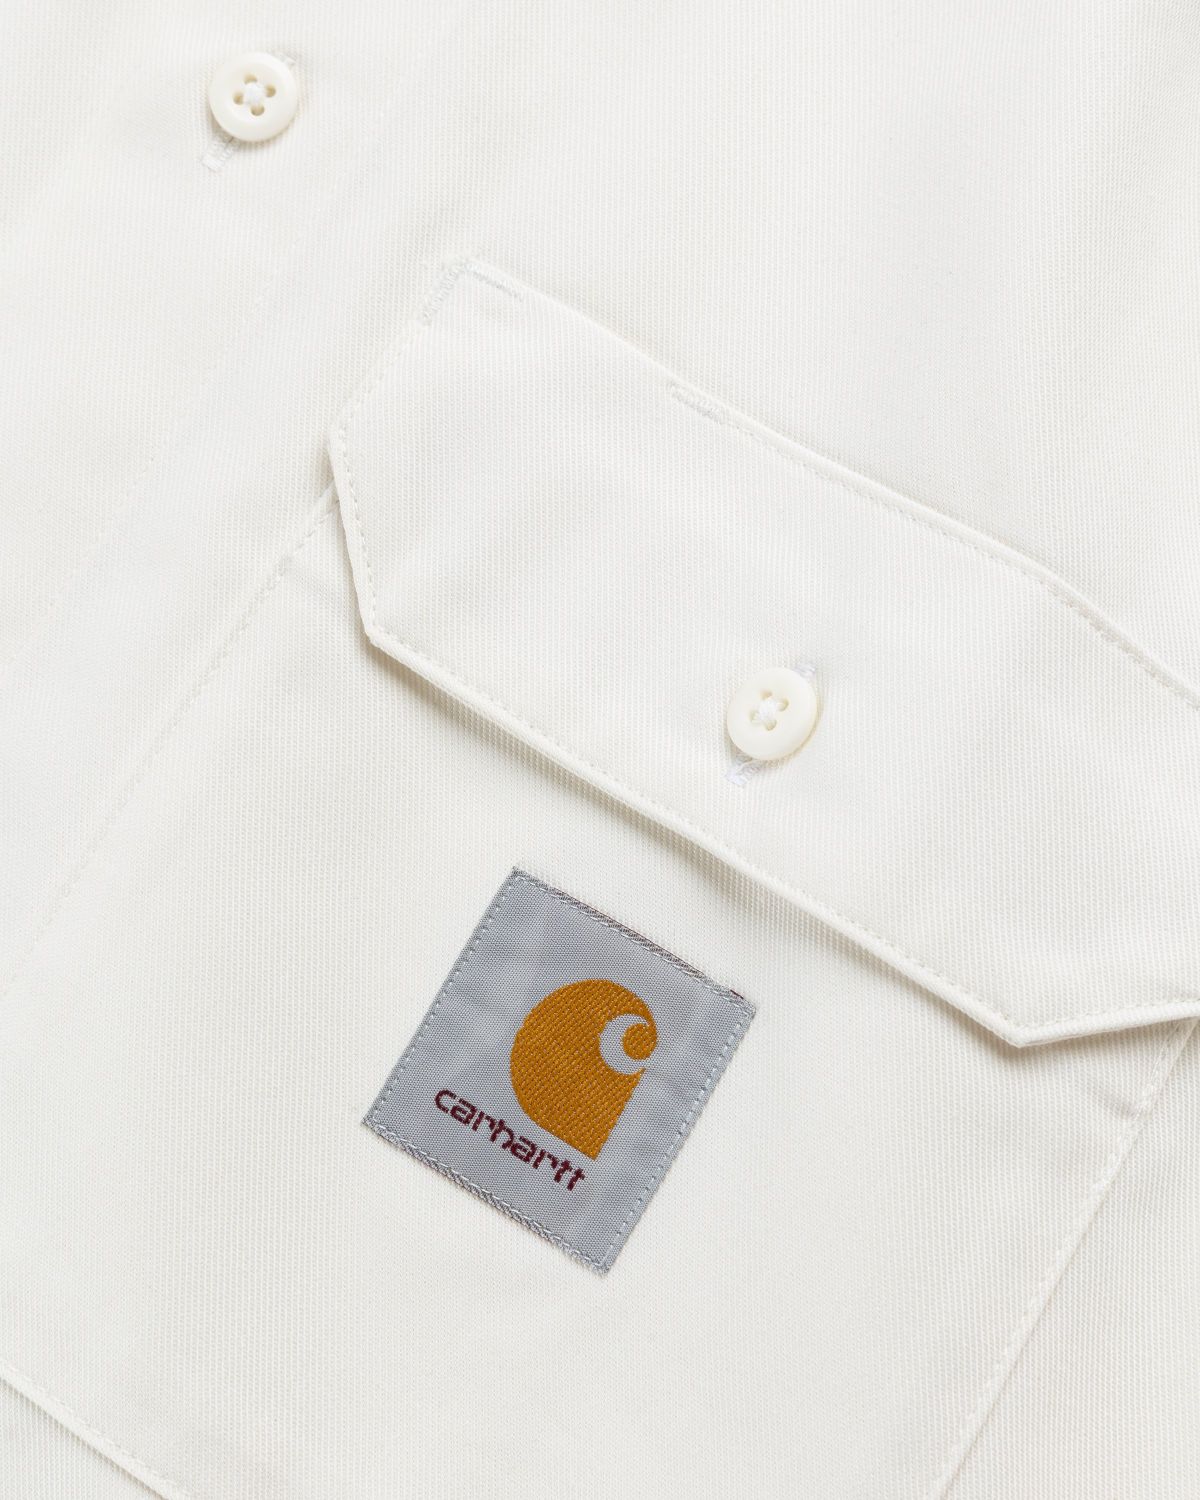 Carhartt WIP – Master Shirt Wax - Shirts - White - Image 6